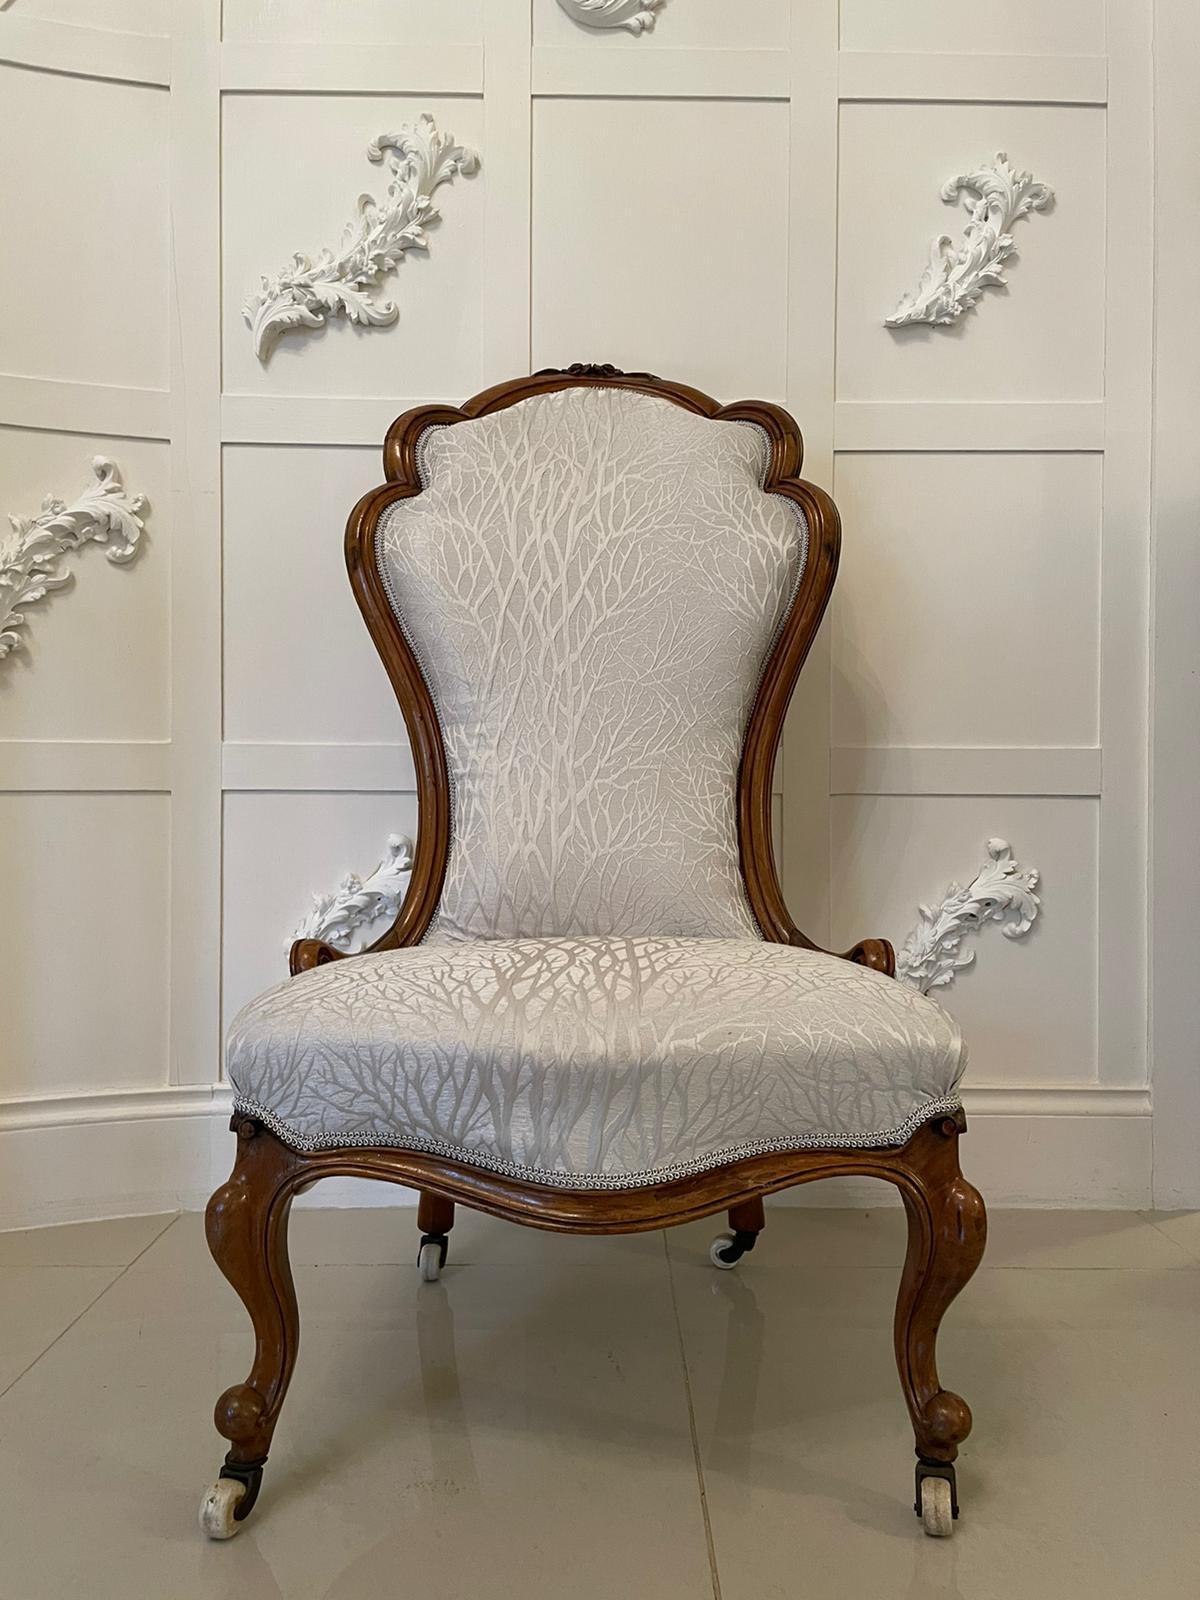 19. Jahrhundert antiken viktorianischen geschnitzten Nussbaum Damen Stuhl mit einer schönen Qualität scalloped geformt geschnitzt massivem Nussbaum zurück und Serpentine Sitz. Er steht auf hübsch geschnitzten, geformten Cabriole-Beinen an der